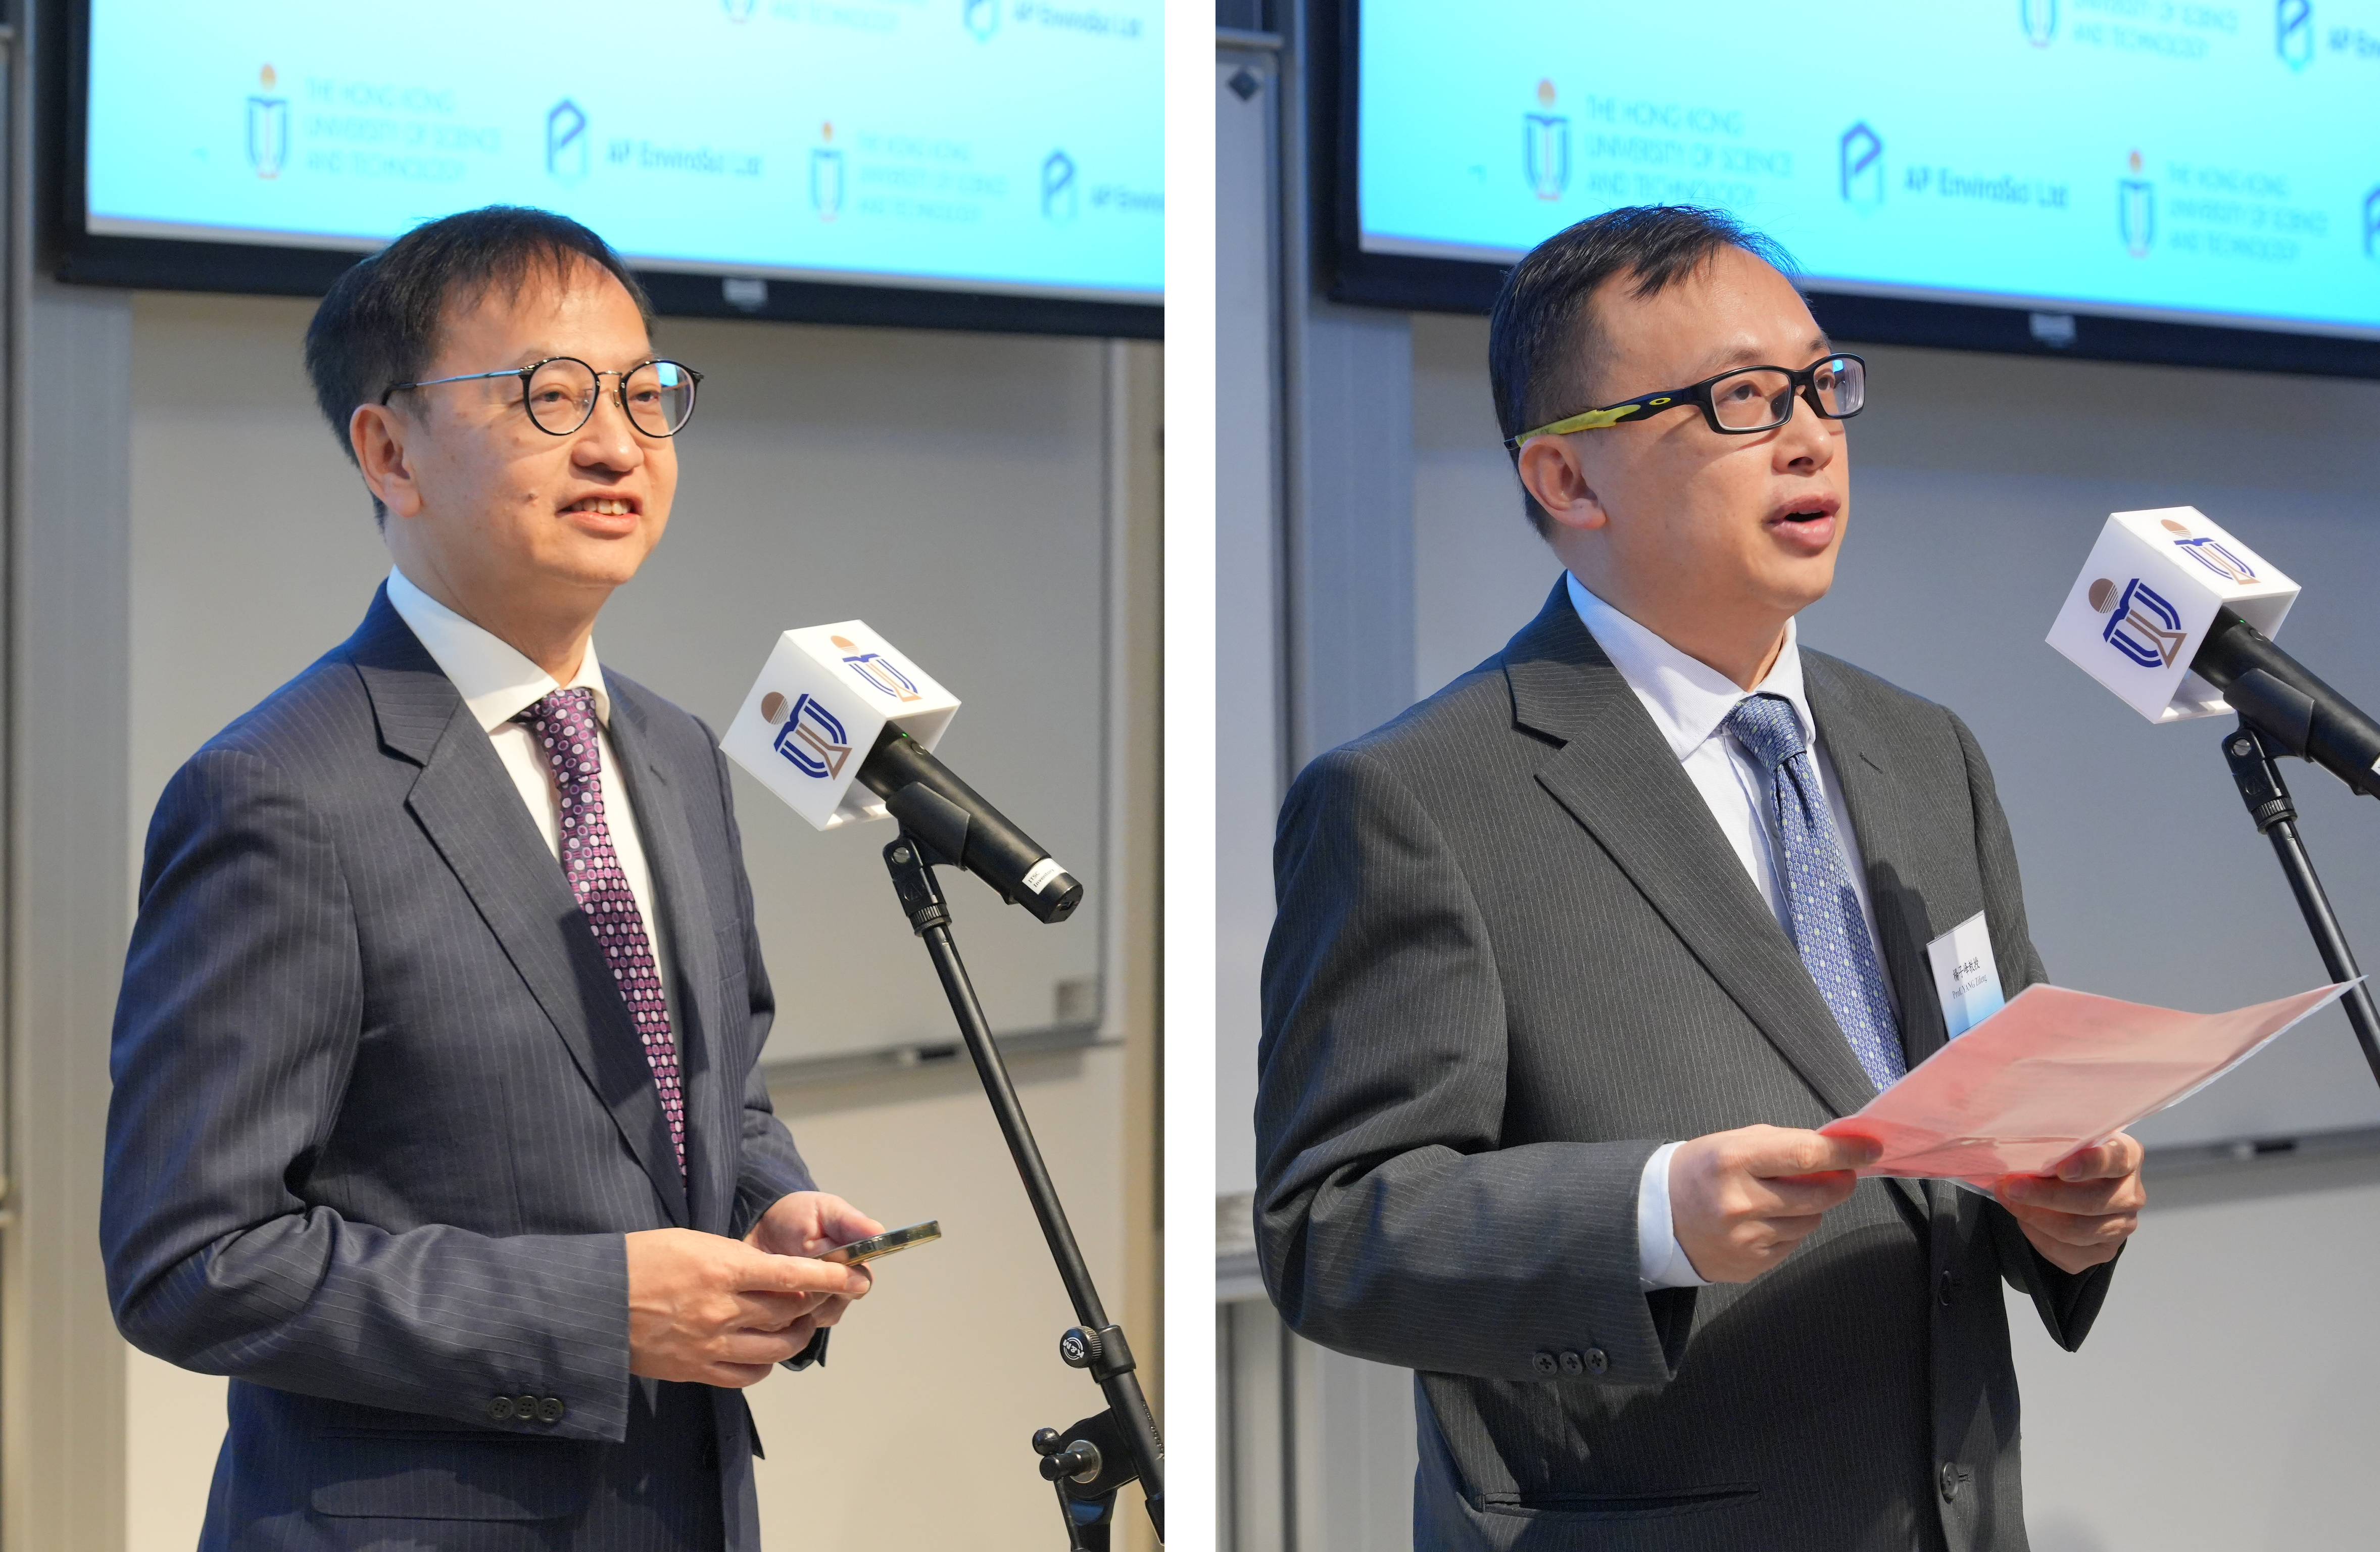 APEL主席钟伟强博士（左）及广州医科大学附属第一医院广州呼吸健康研究院副院长杨子峰教授（右）为活动致辞。